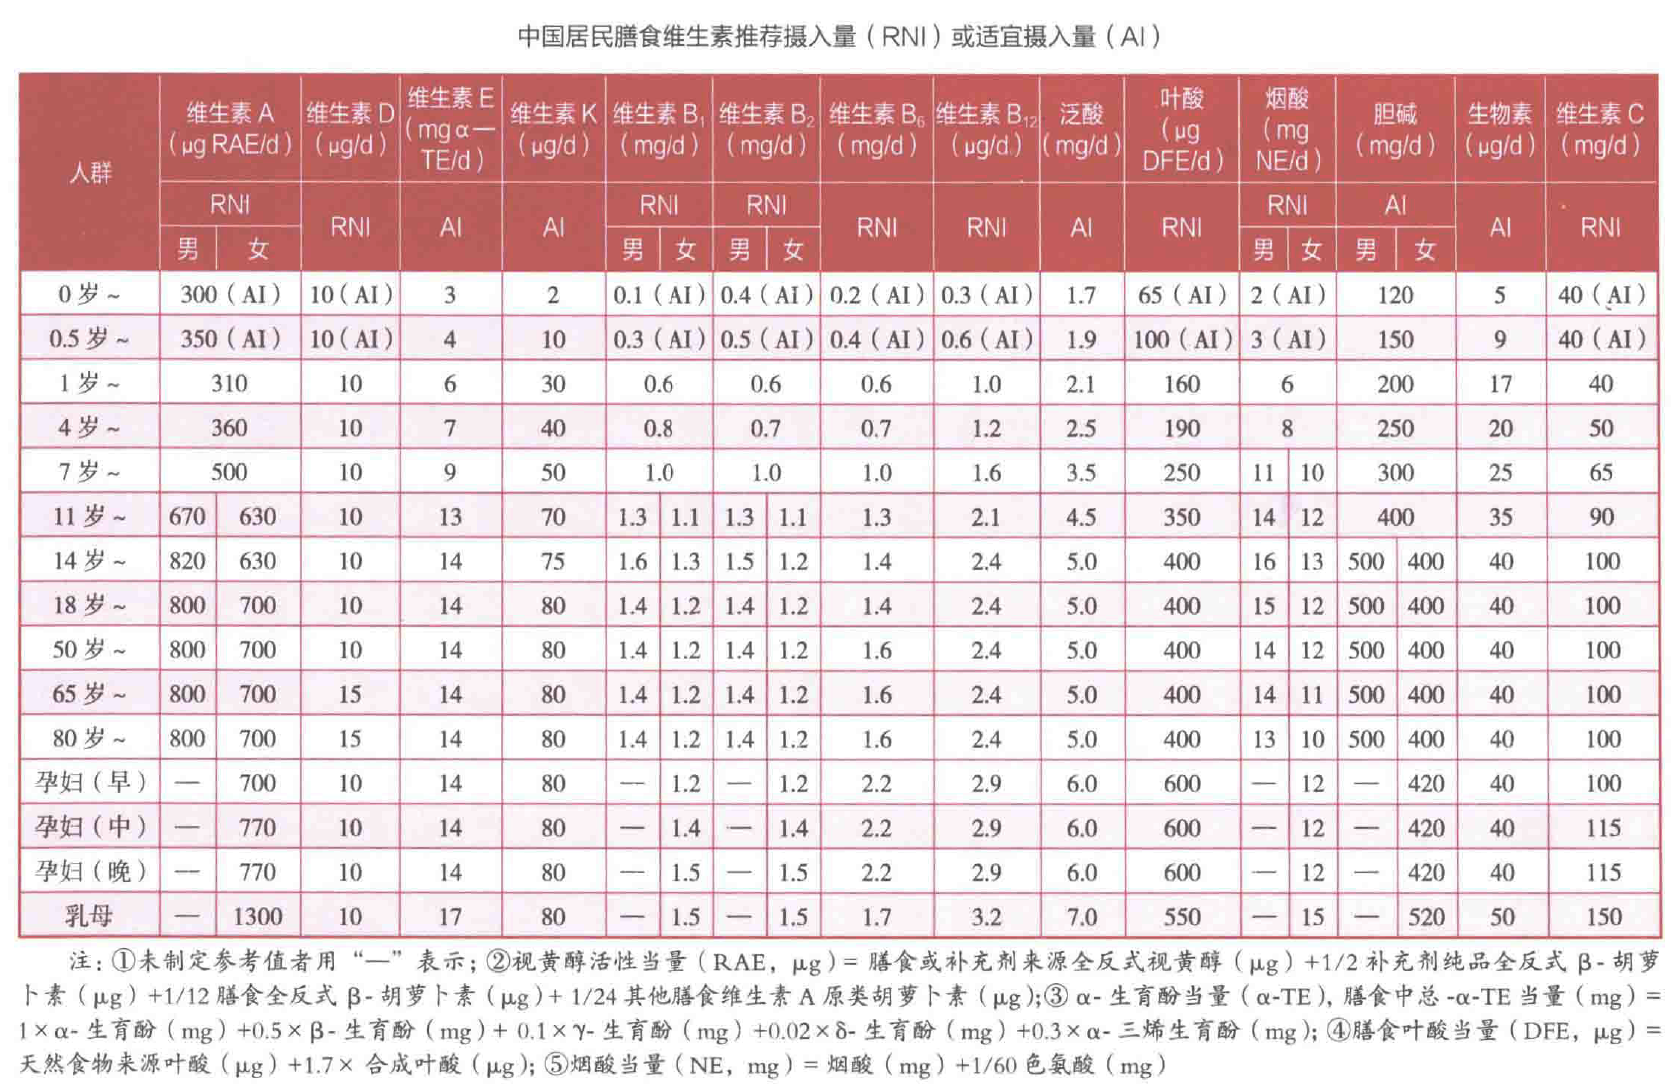 中国居民膳食维生素的推荐摄入量或适宜摄入量